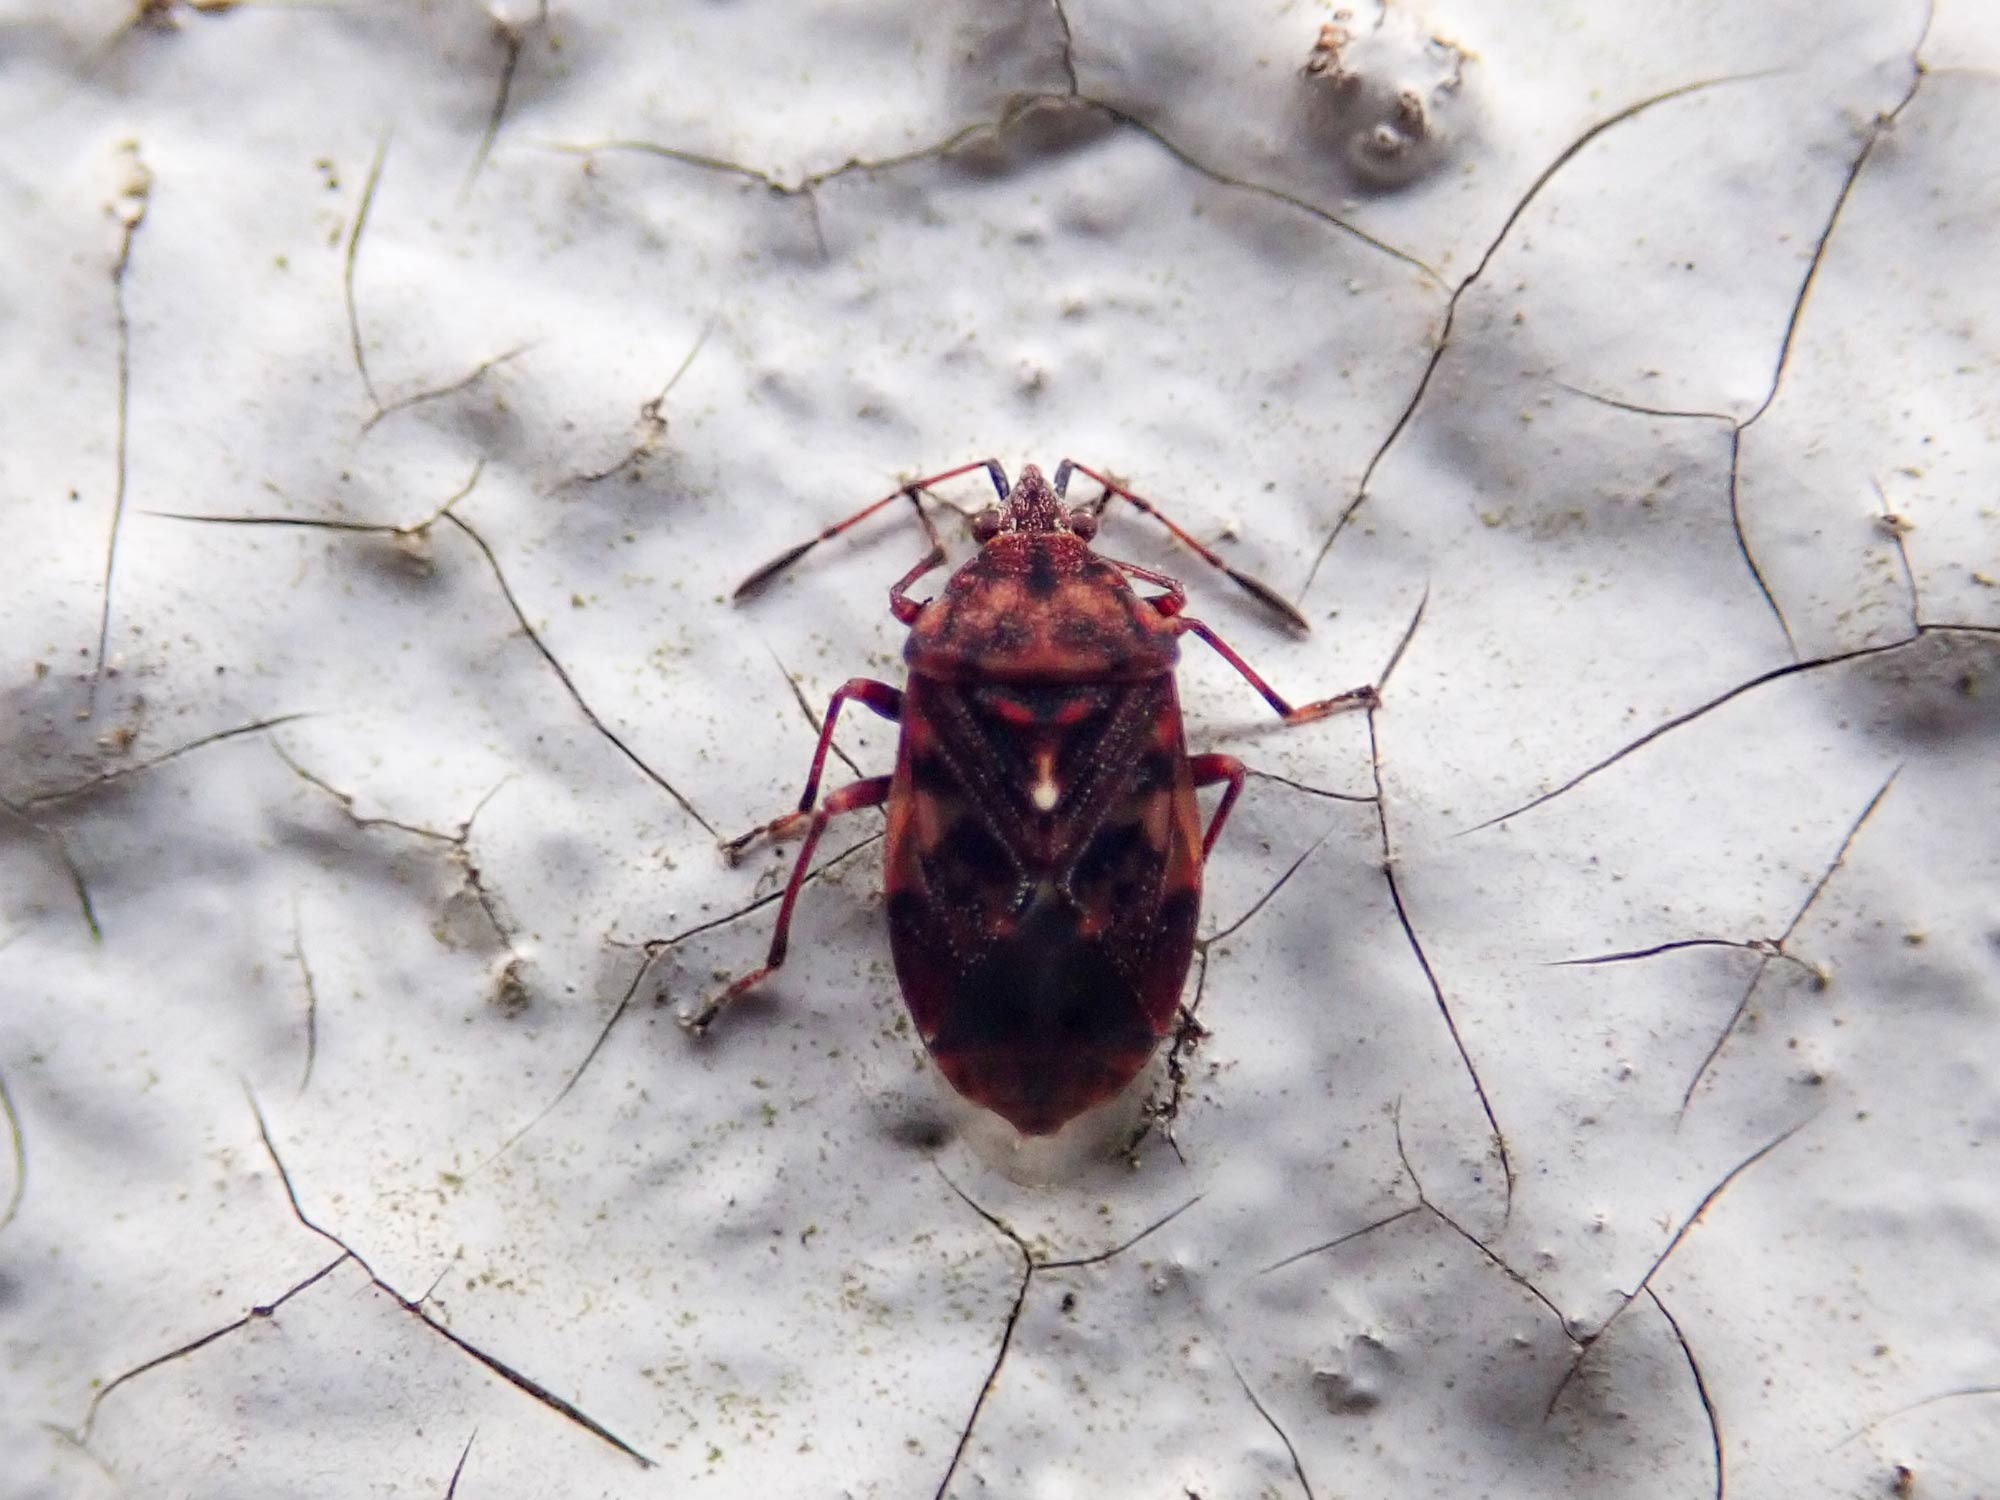 ムラサキナガカメムシ 虫の写真と生態なら昆虫写真図鑑 ムシミル